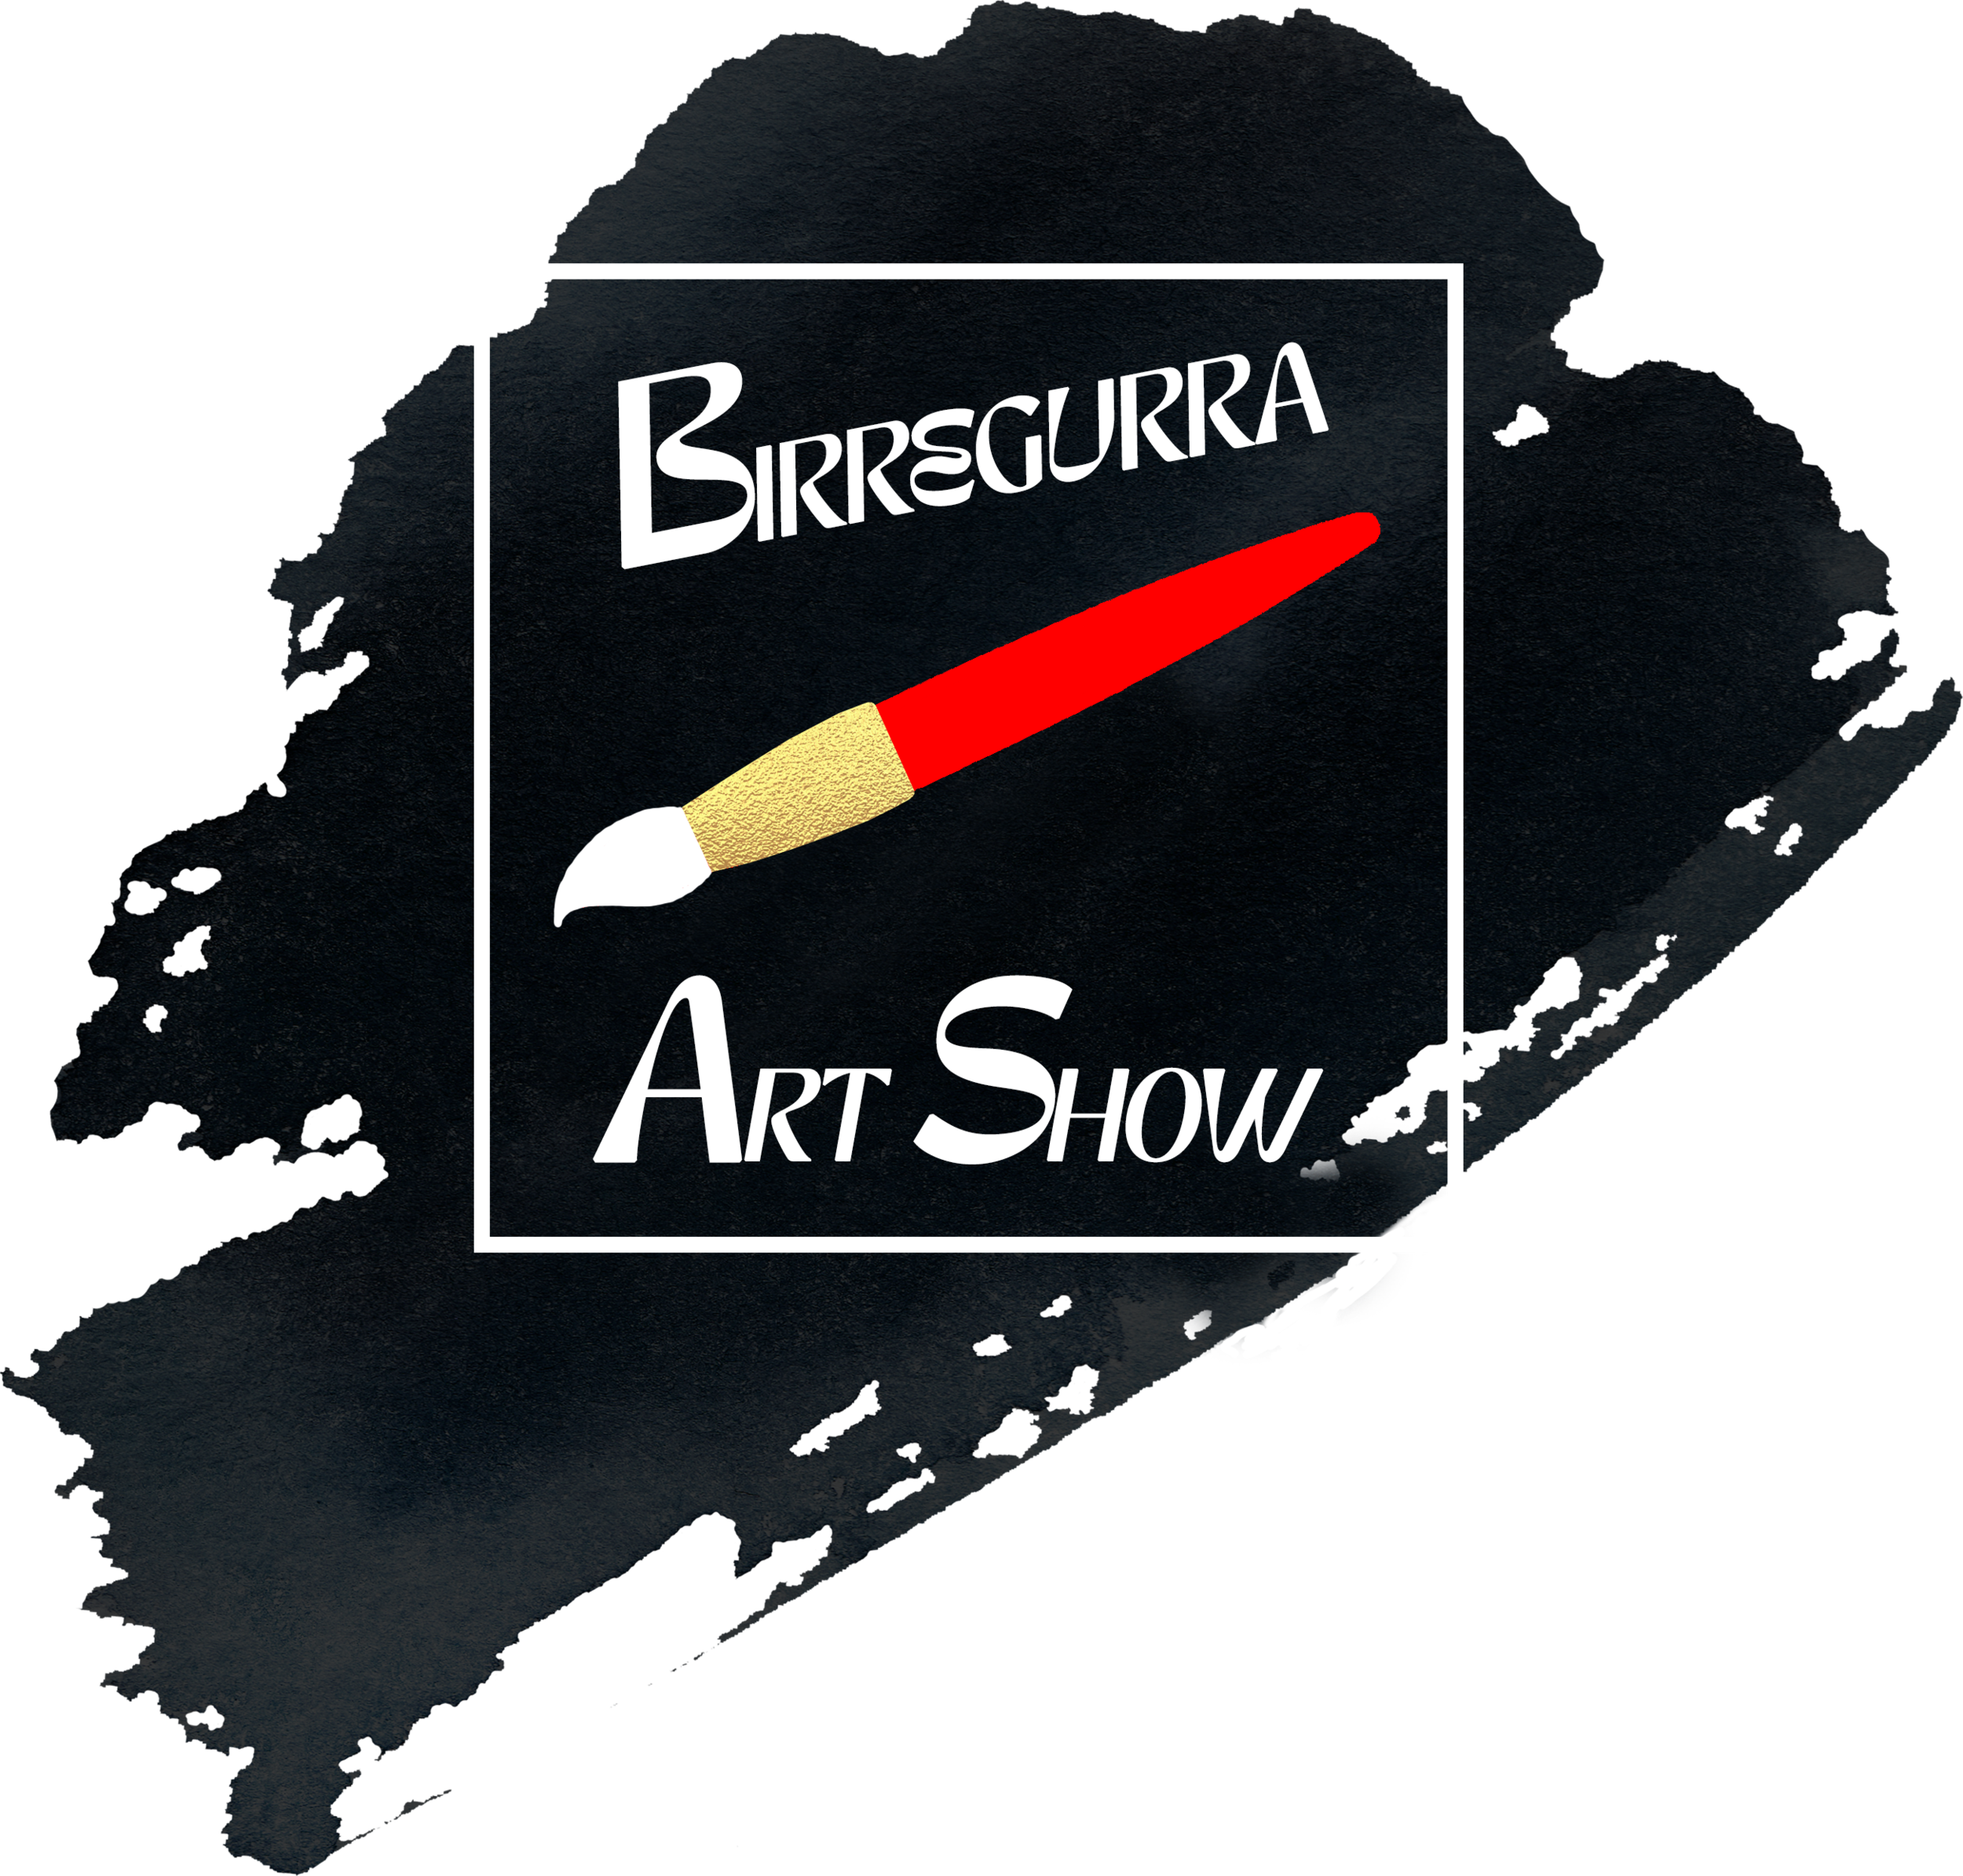 Birregurra Art Show